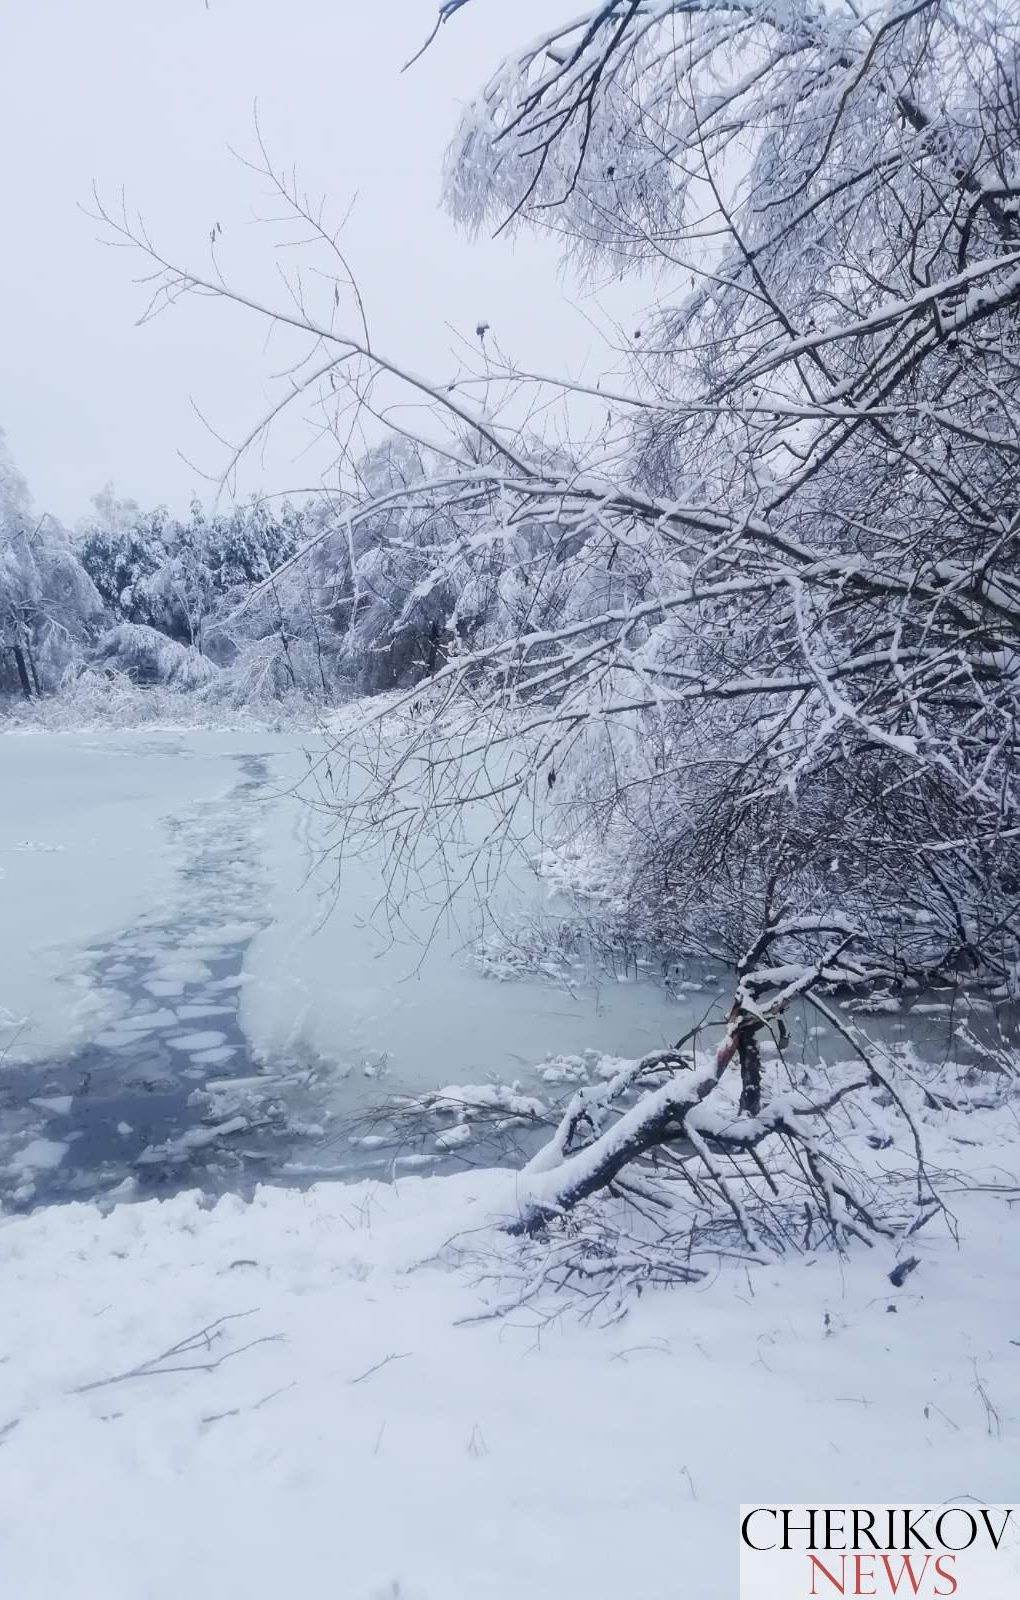 Треснул тонкий лед под ногами: в Чериковском районе утонул мужчина